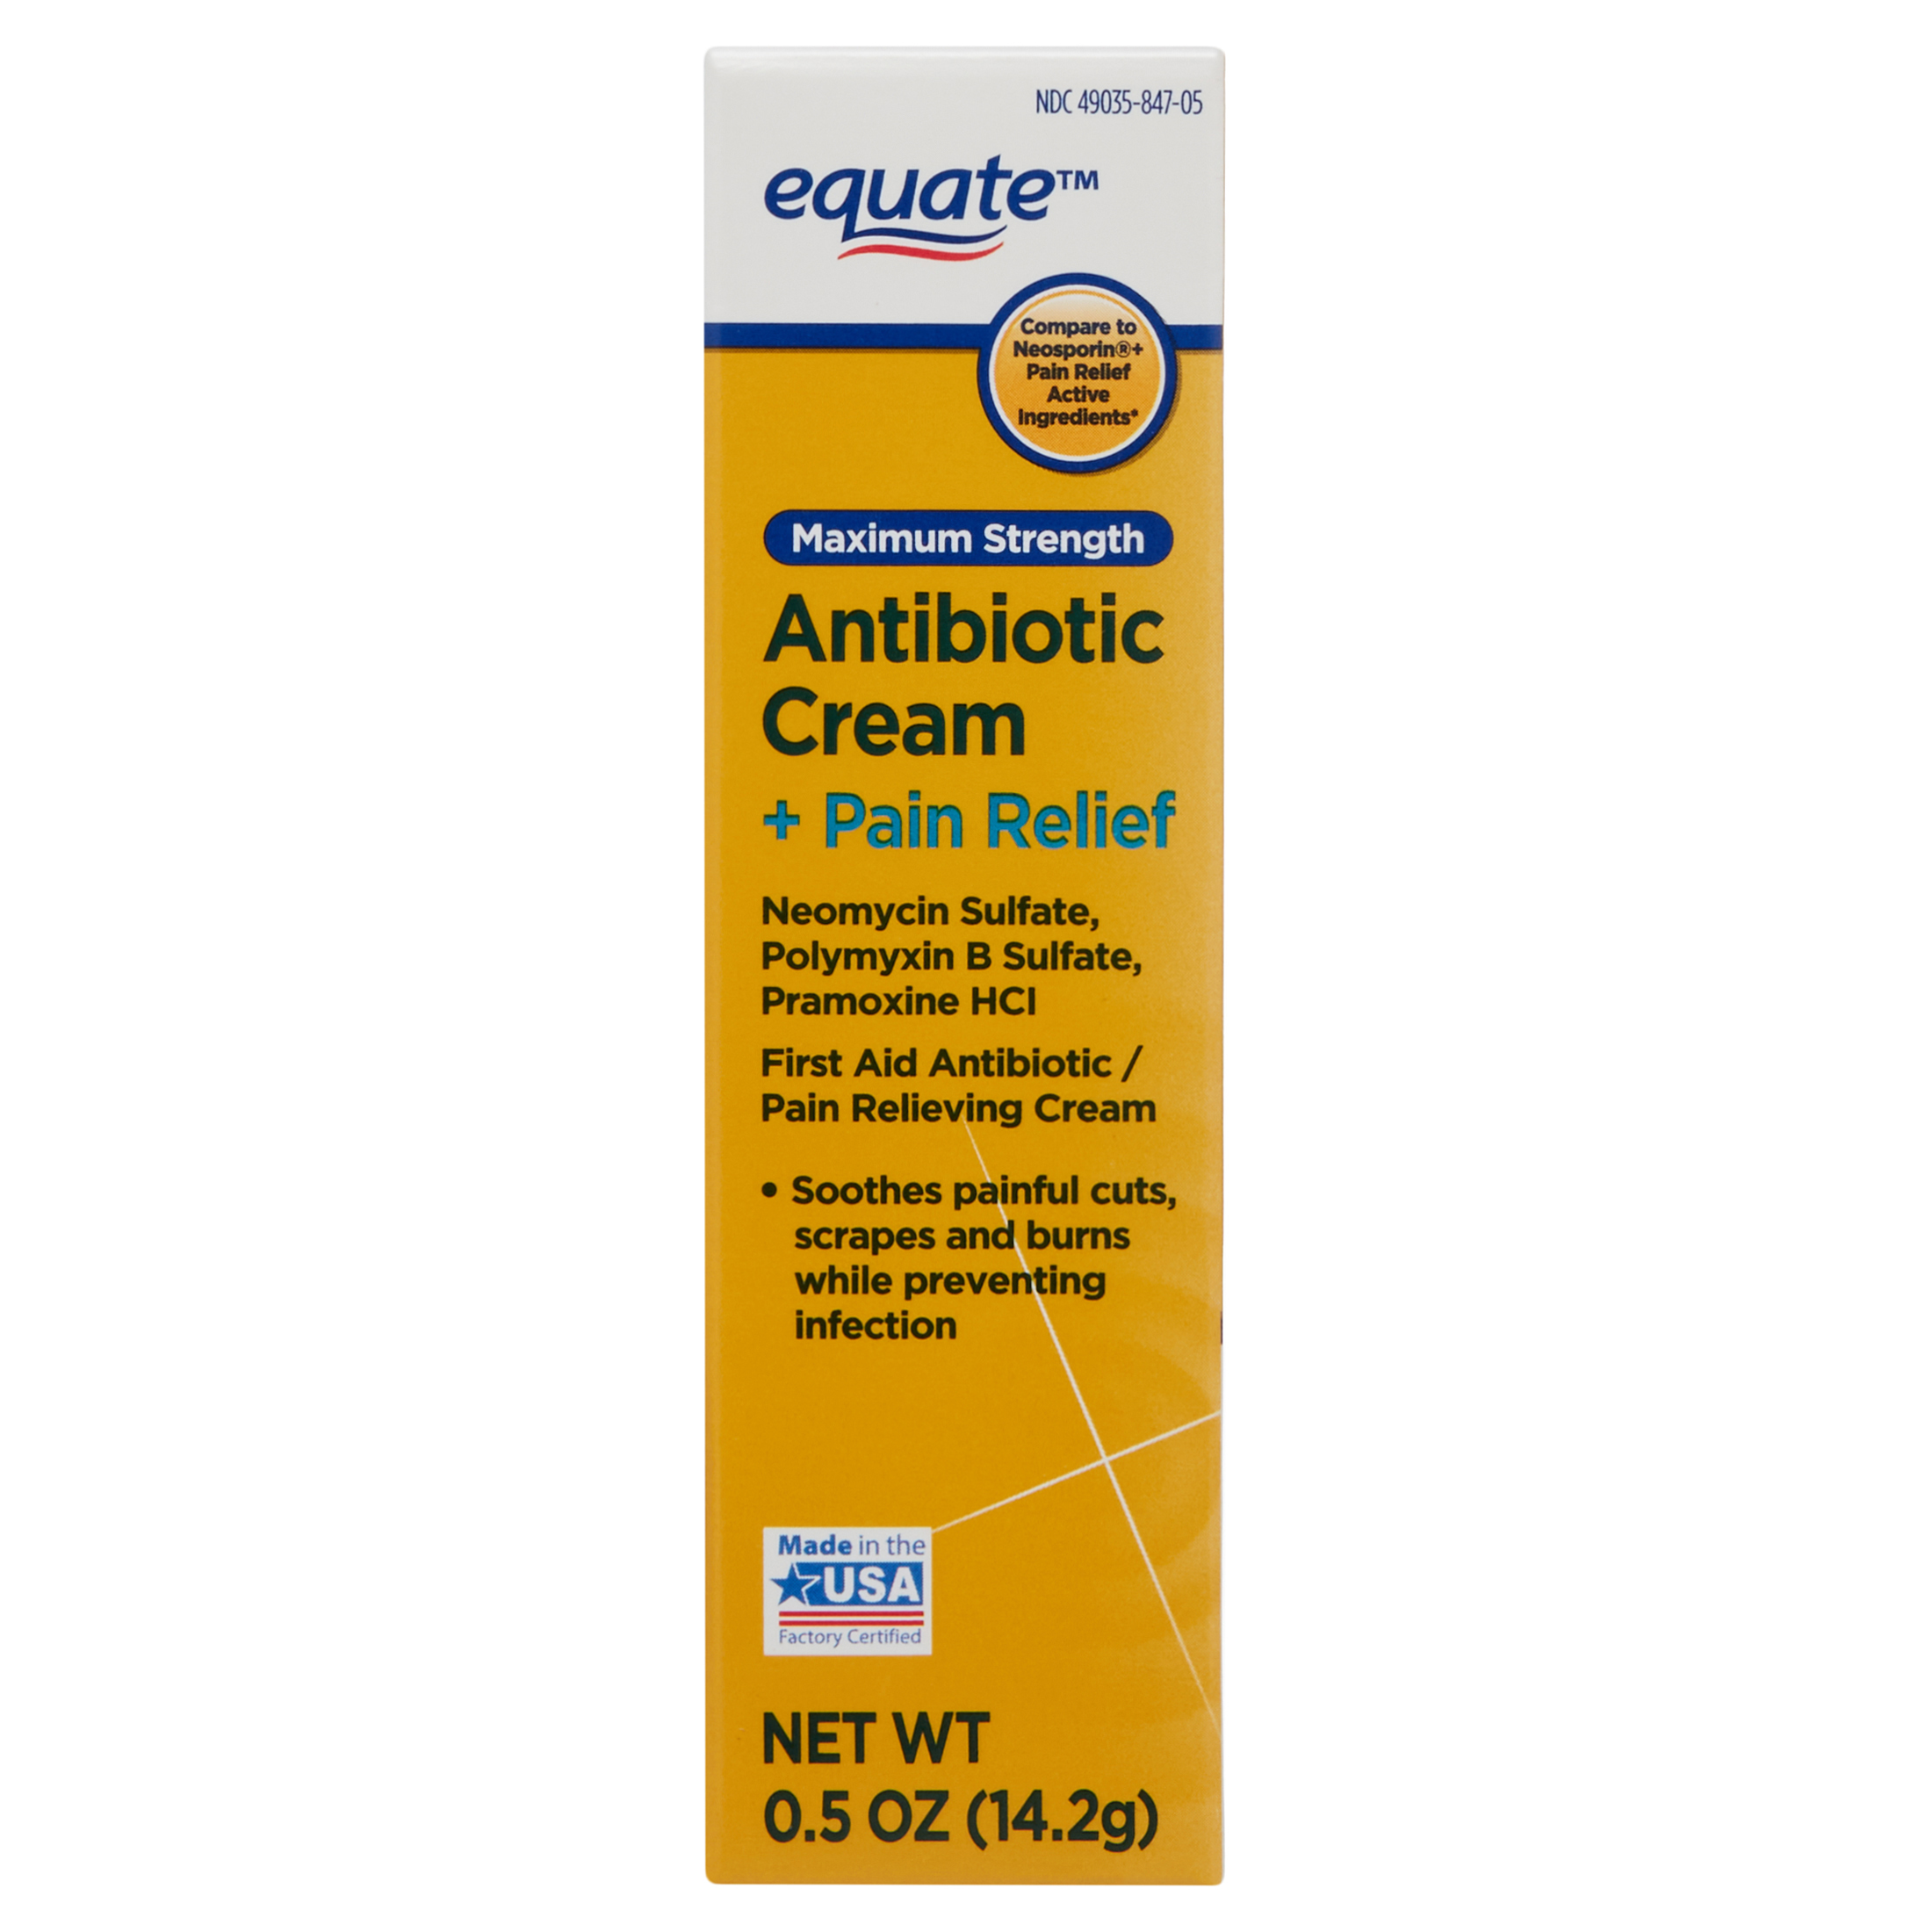 Equate Maximum Strength Antibiotic Cream + Pain Relief, 0.5 oz - image 1 of 9